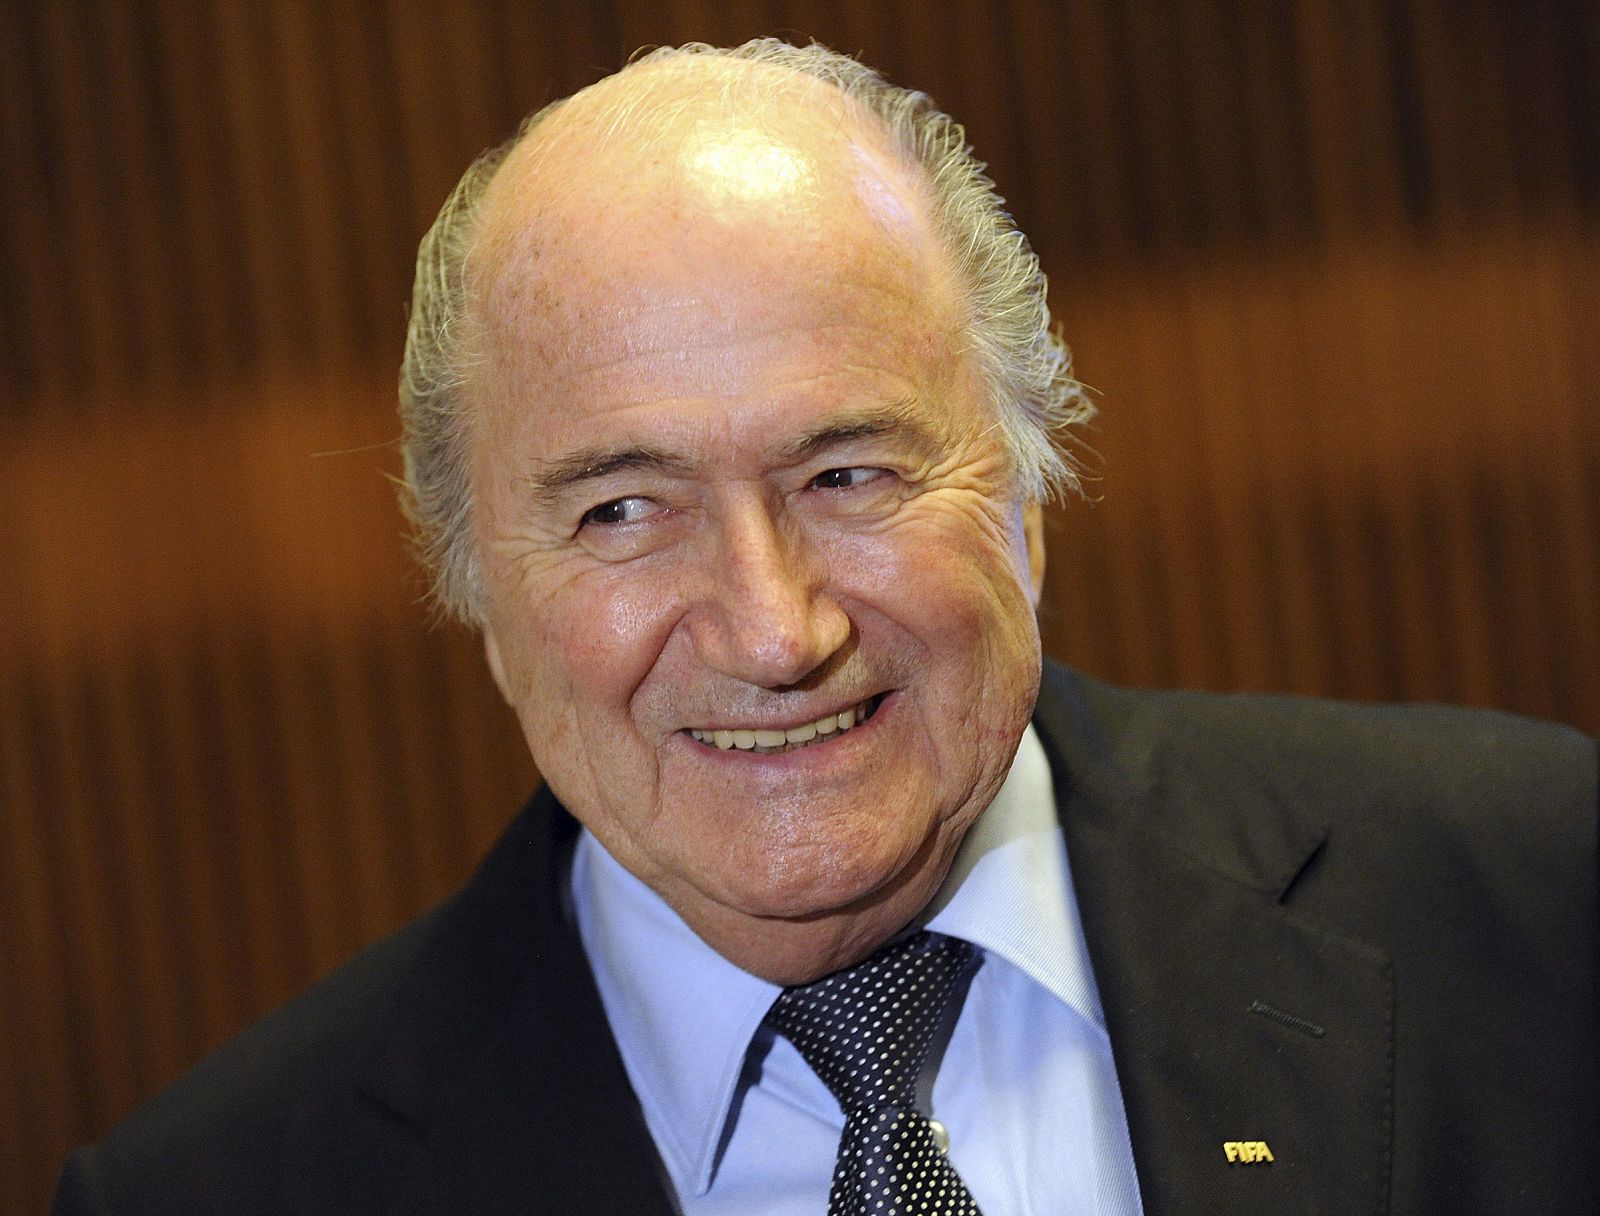 Joseph Blatter reconoce que en toda elección hay irregularidades, y las candidaturas a los Mundiales no son una excepción.